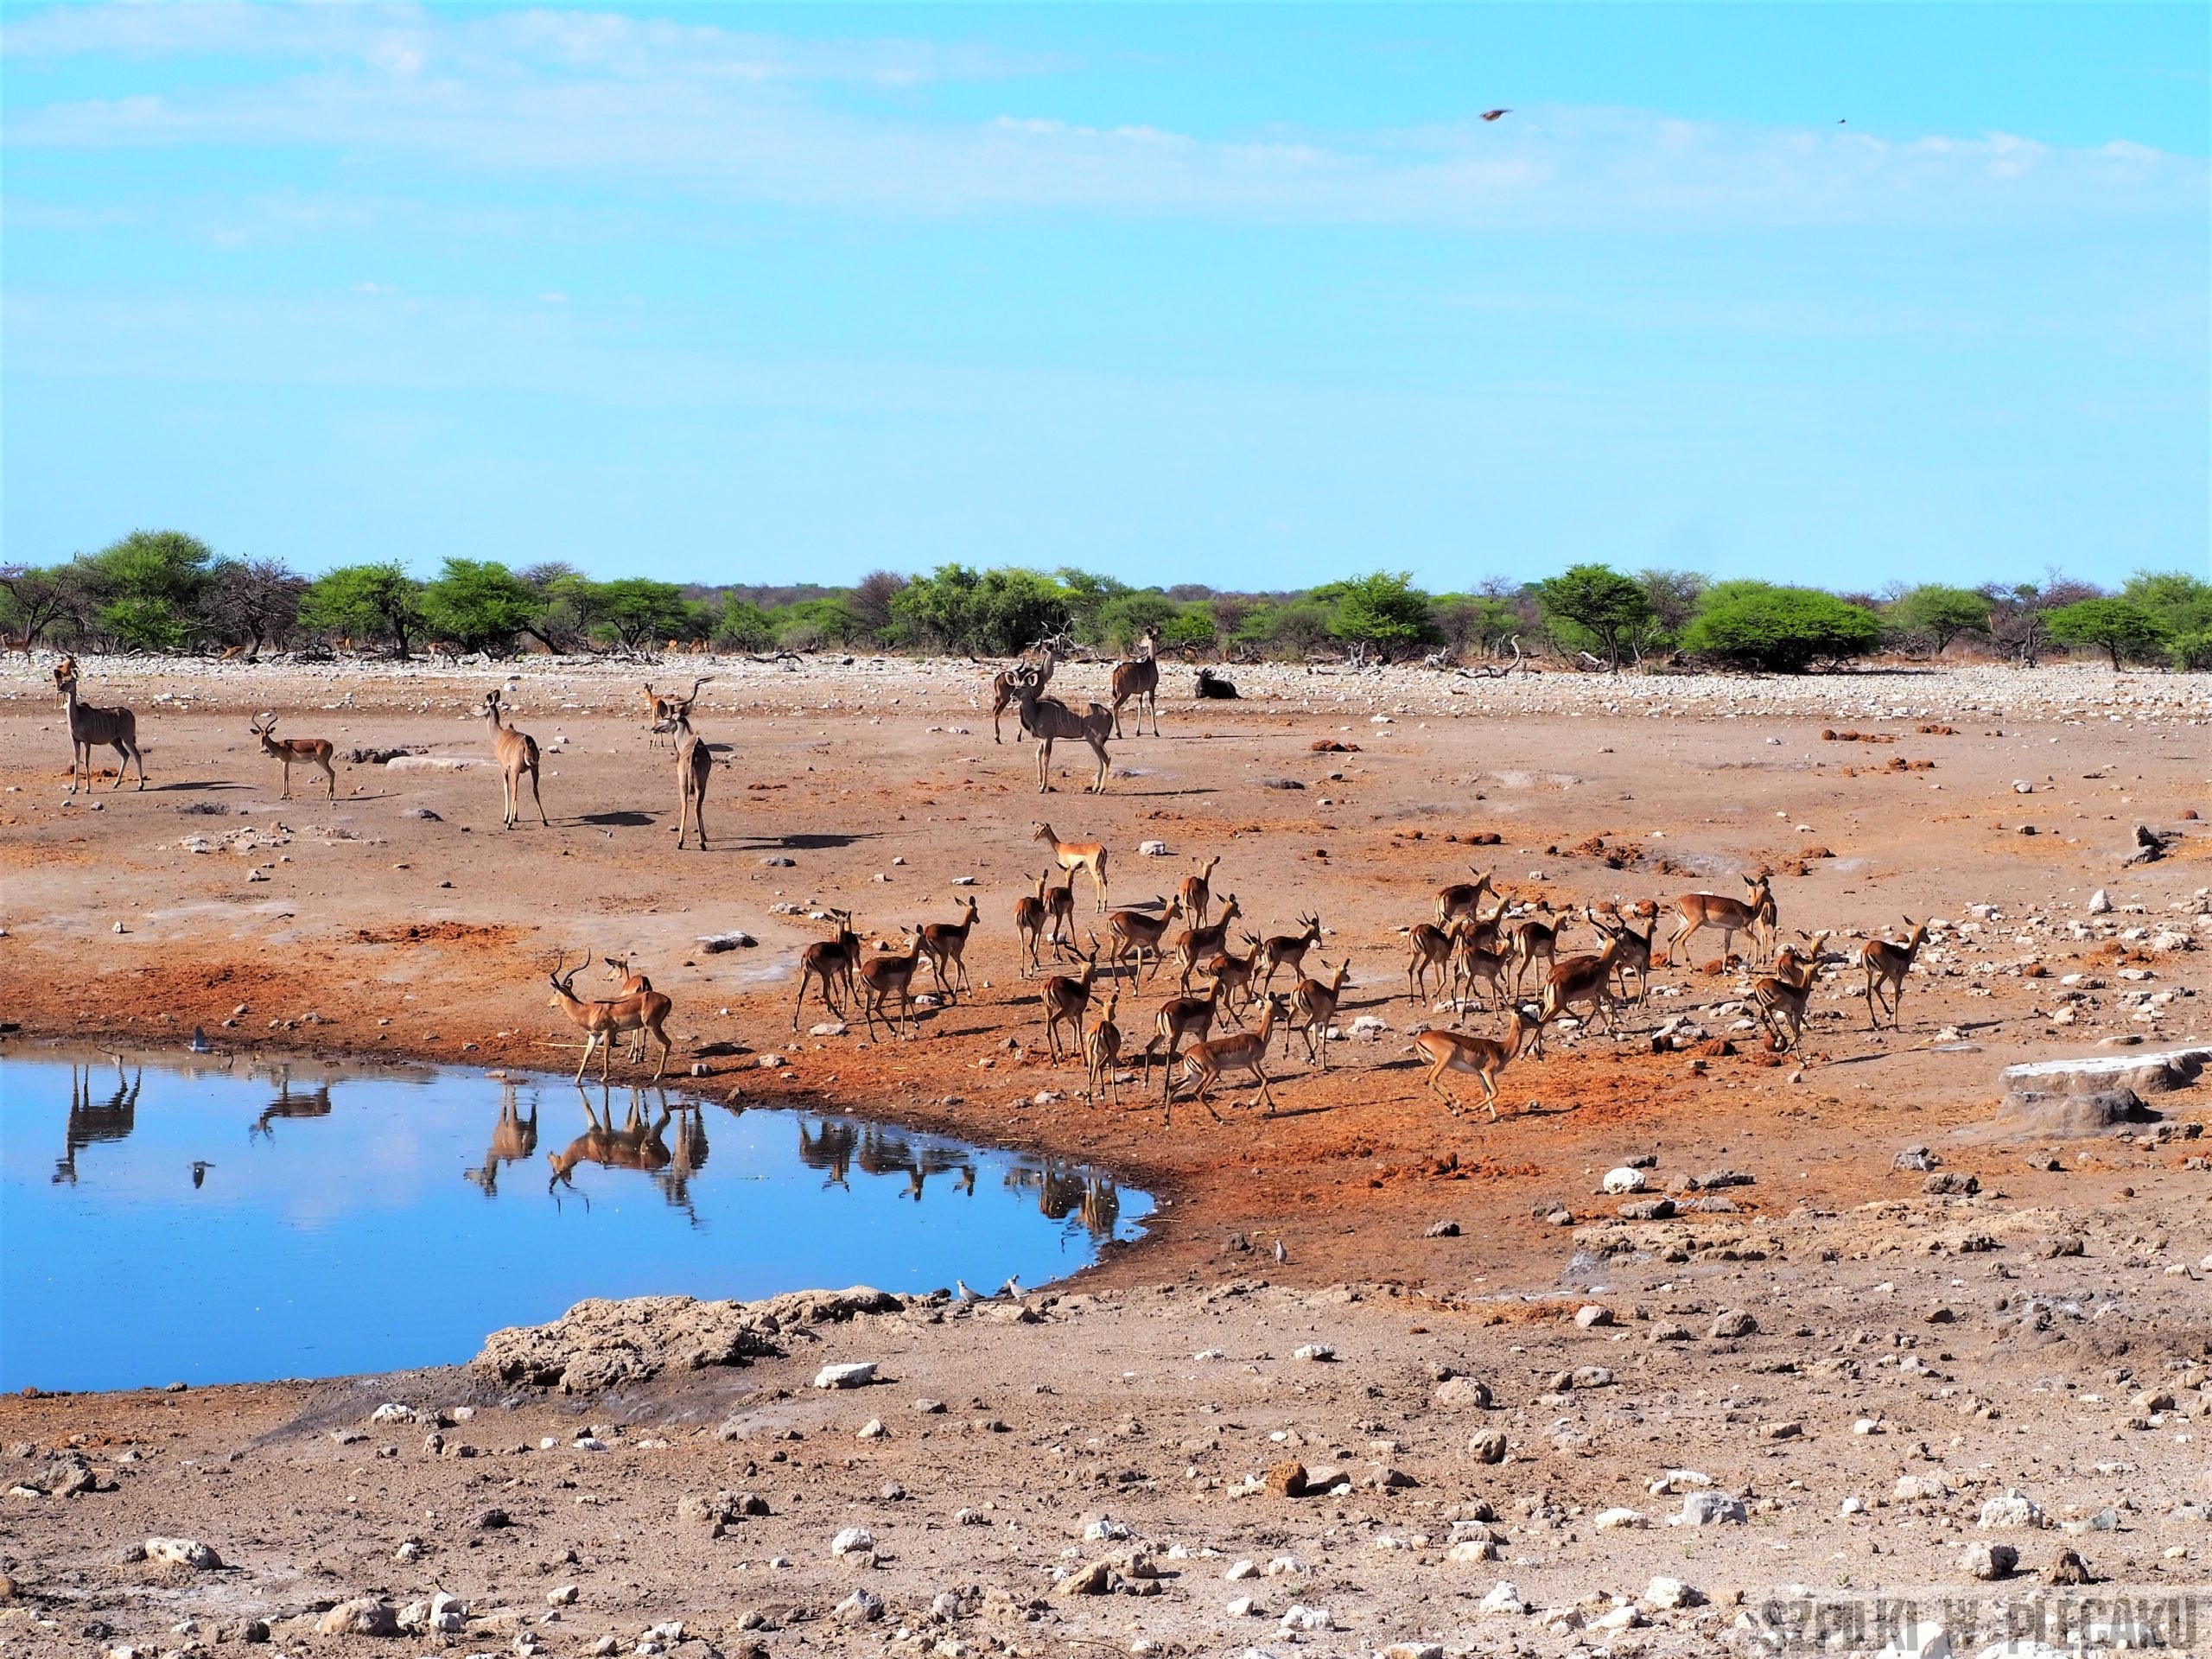 stado zwierząt na safari przy wodopoju - Szpilki w plecaku